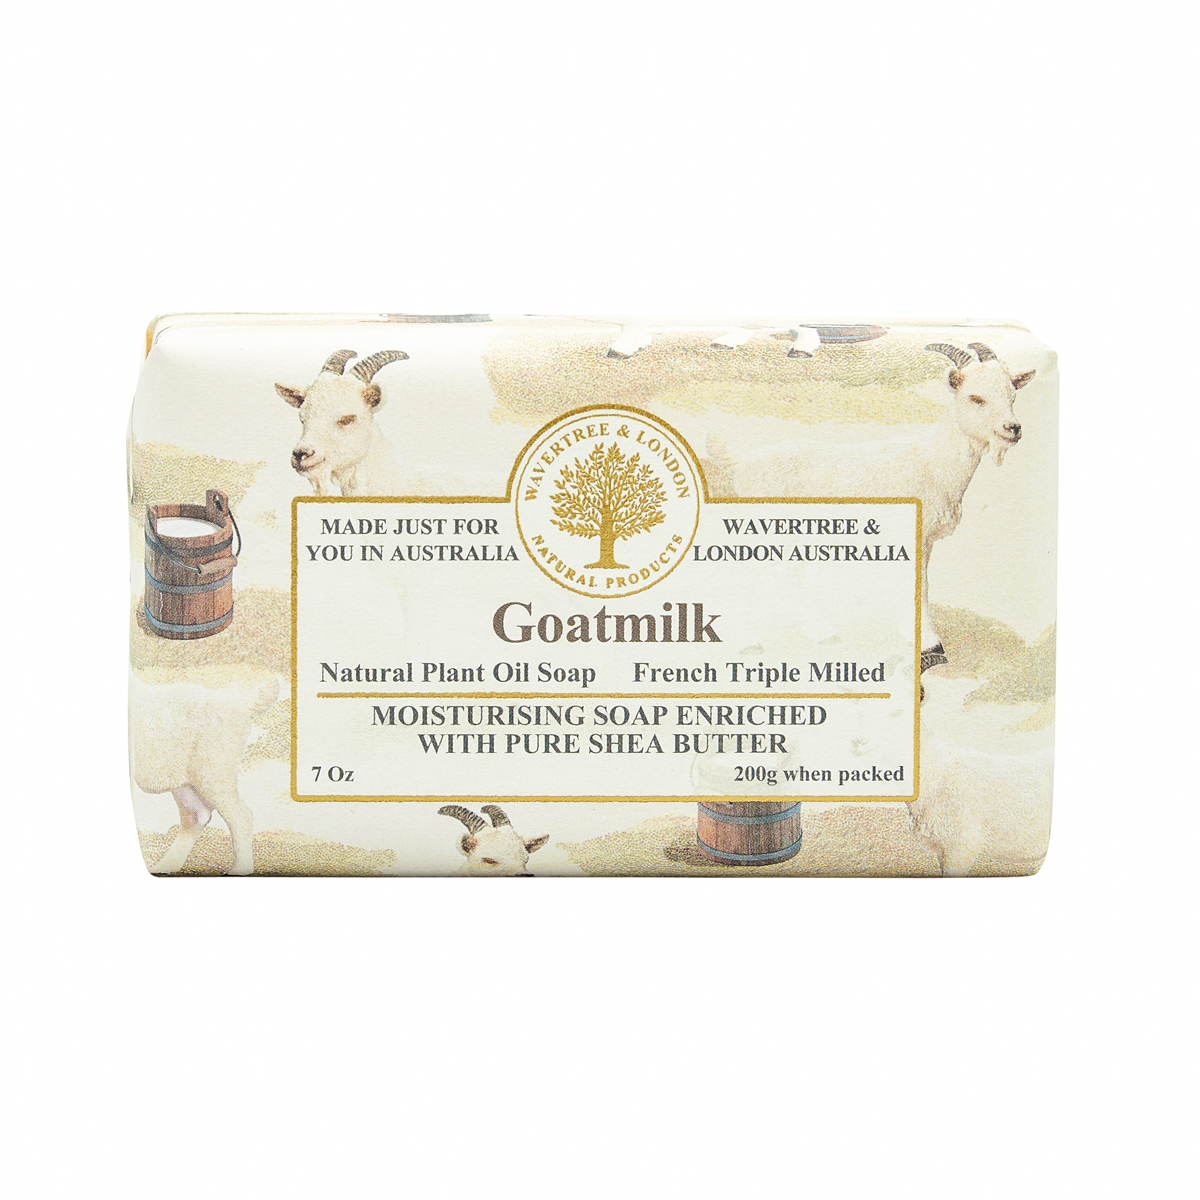 Goatsmilk Soap Bar carton 8x200g - ETA WEEK BEGINNING 11/03